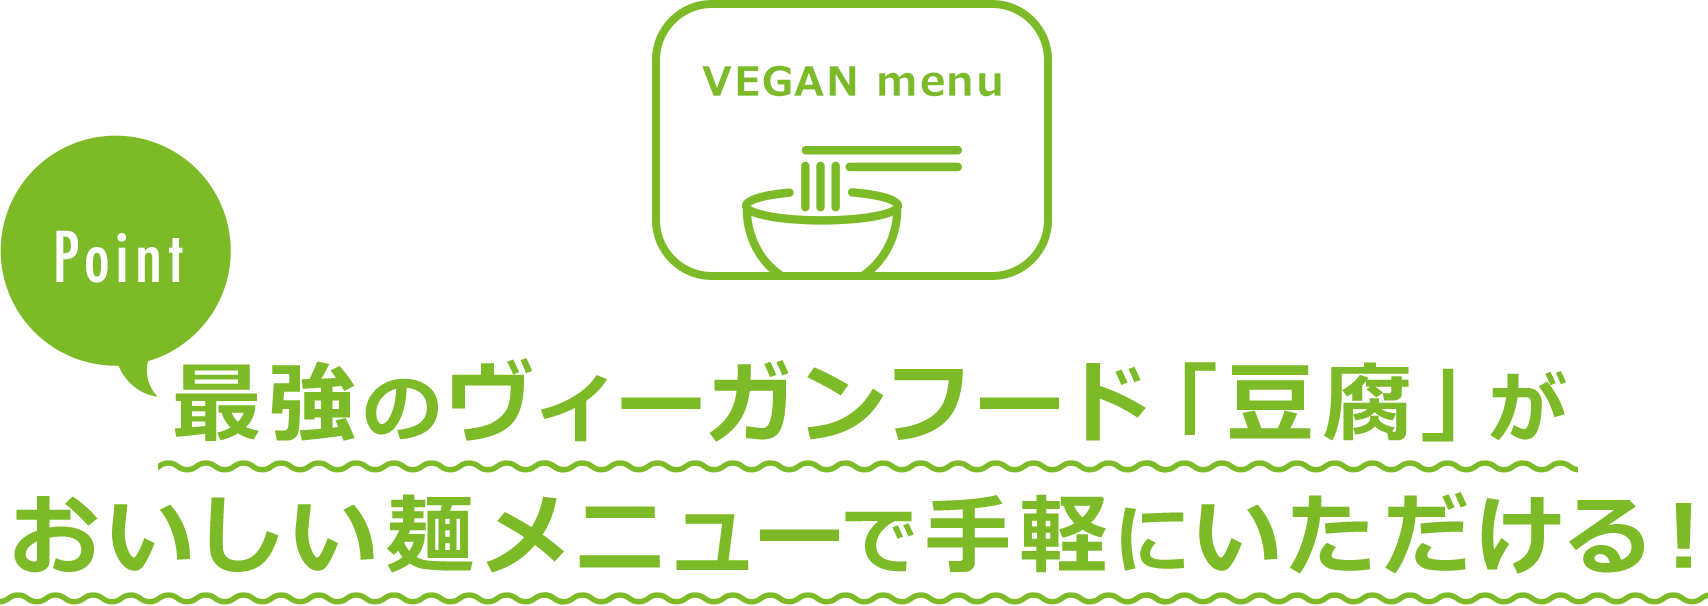 VEGAN menu Point 最強のヴィーガンフード「豆腐」がおいしい麺メニューで手軽にいただける！